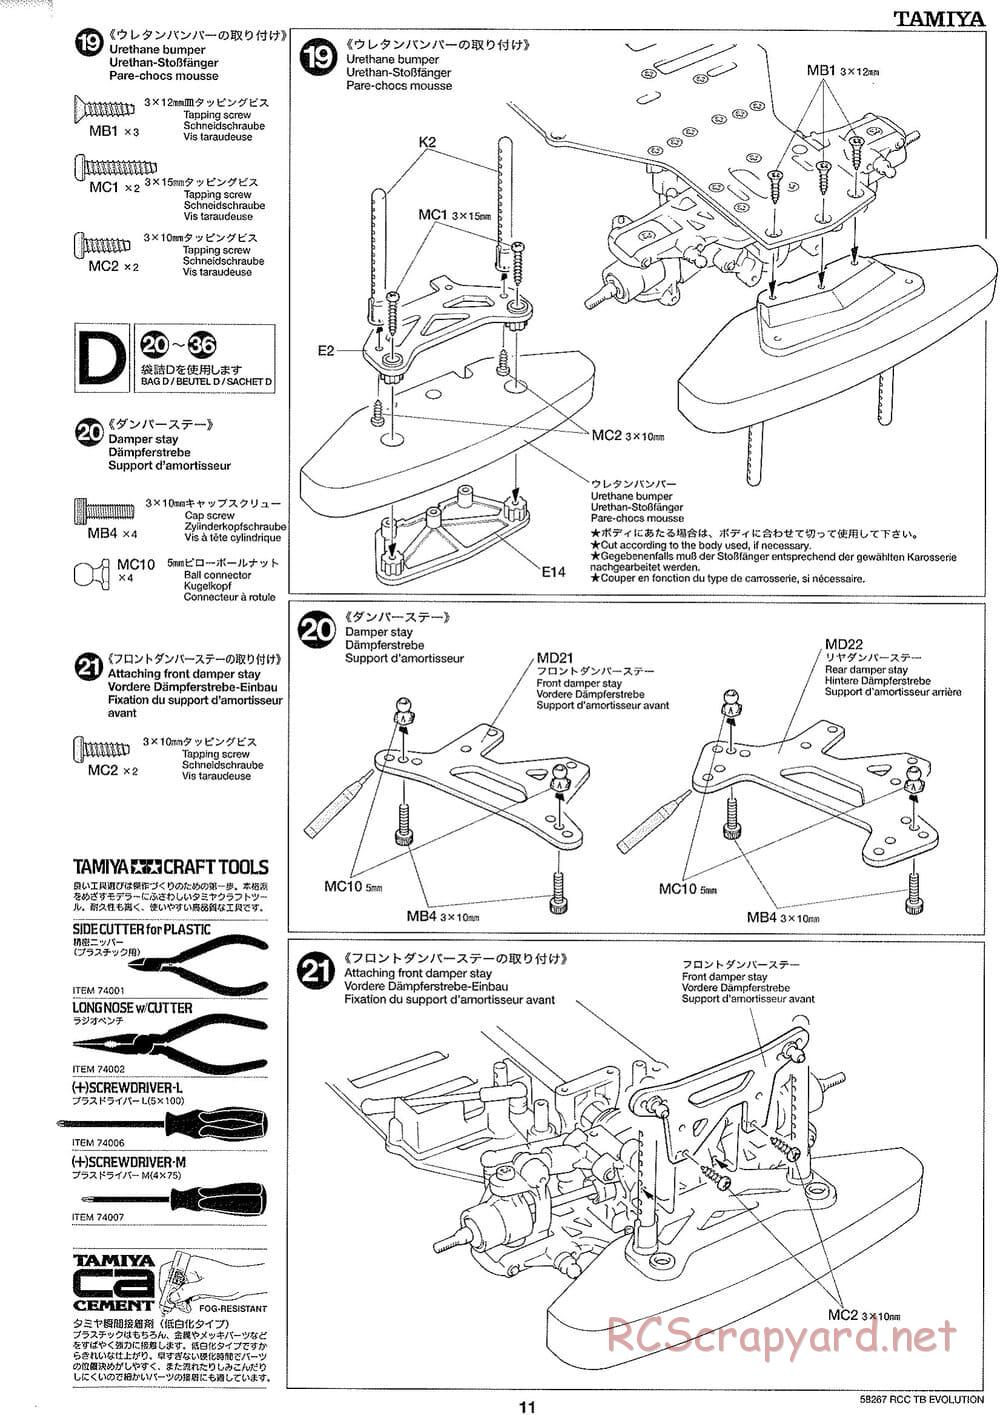 Tamiya - TB Evolution Chassis - Manual - Page 11